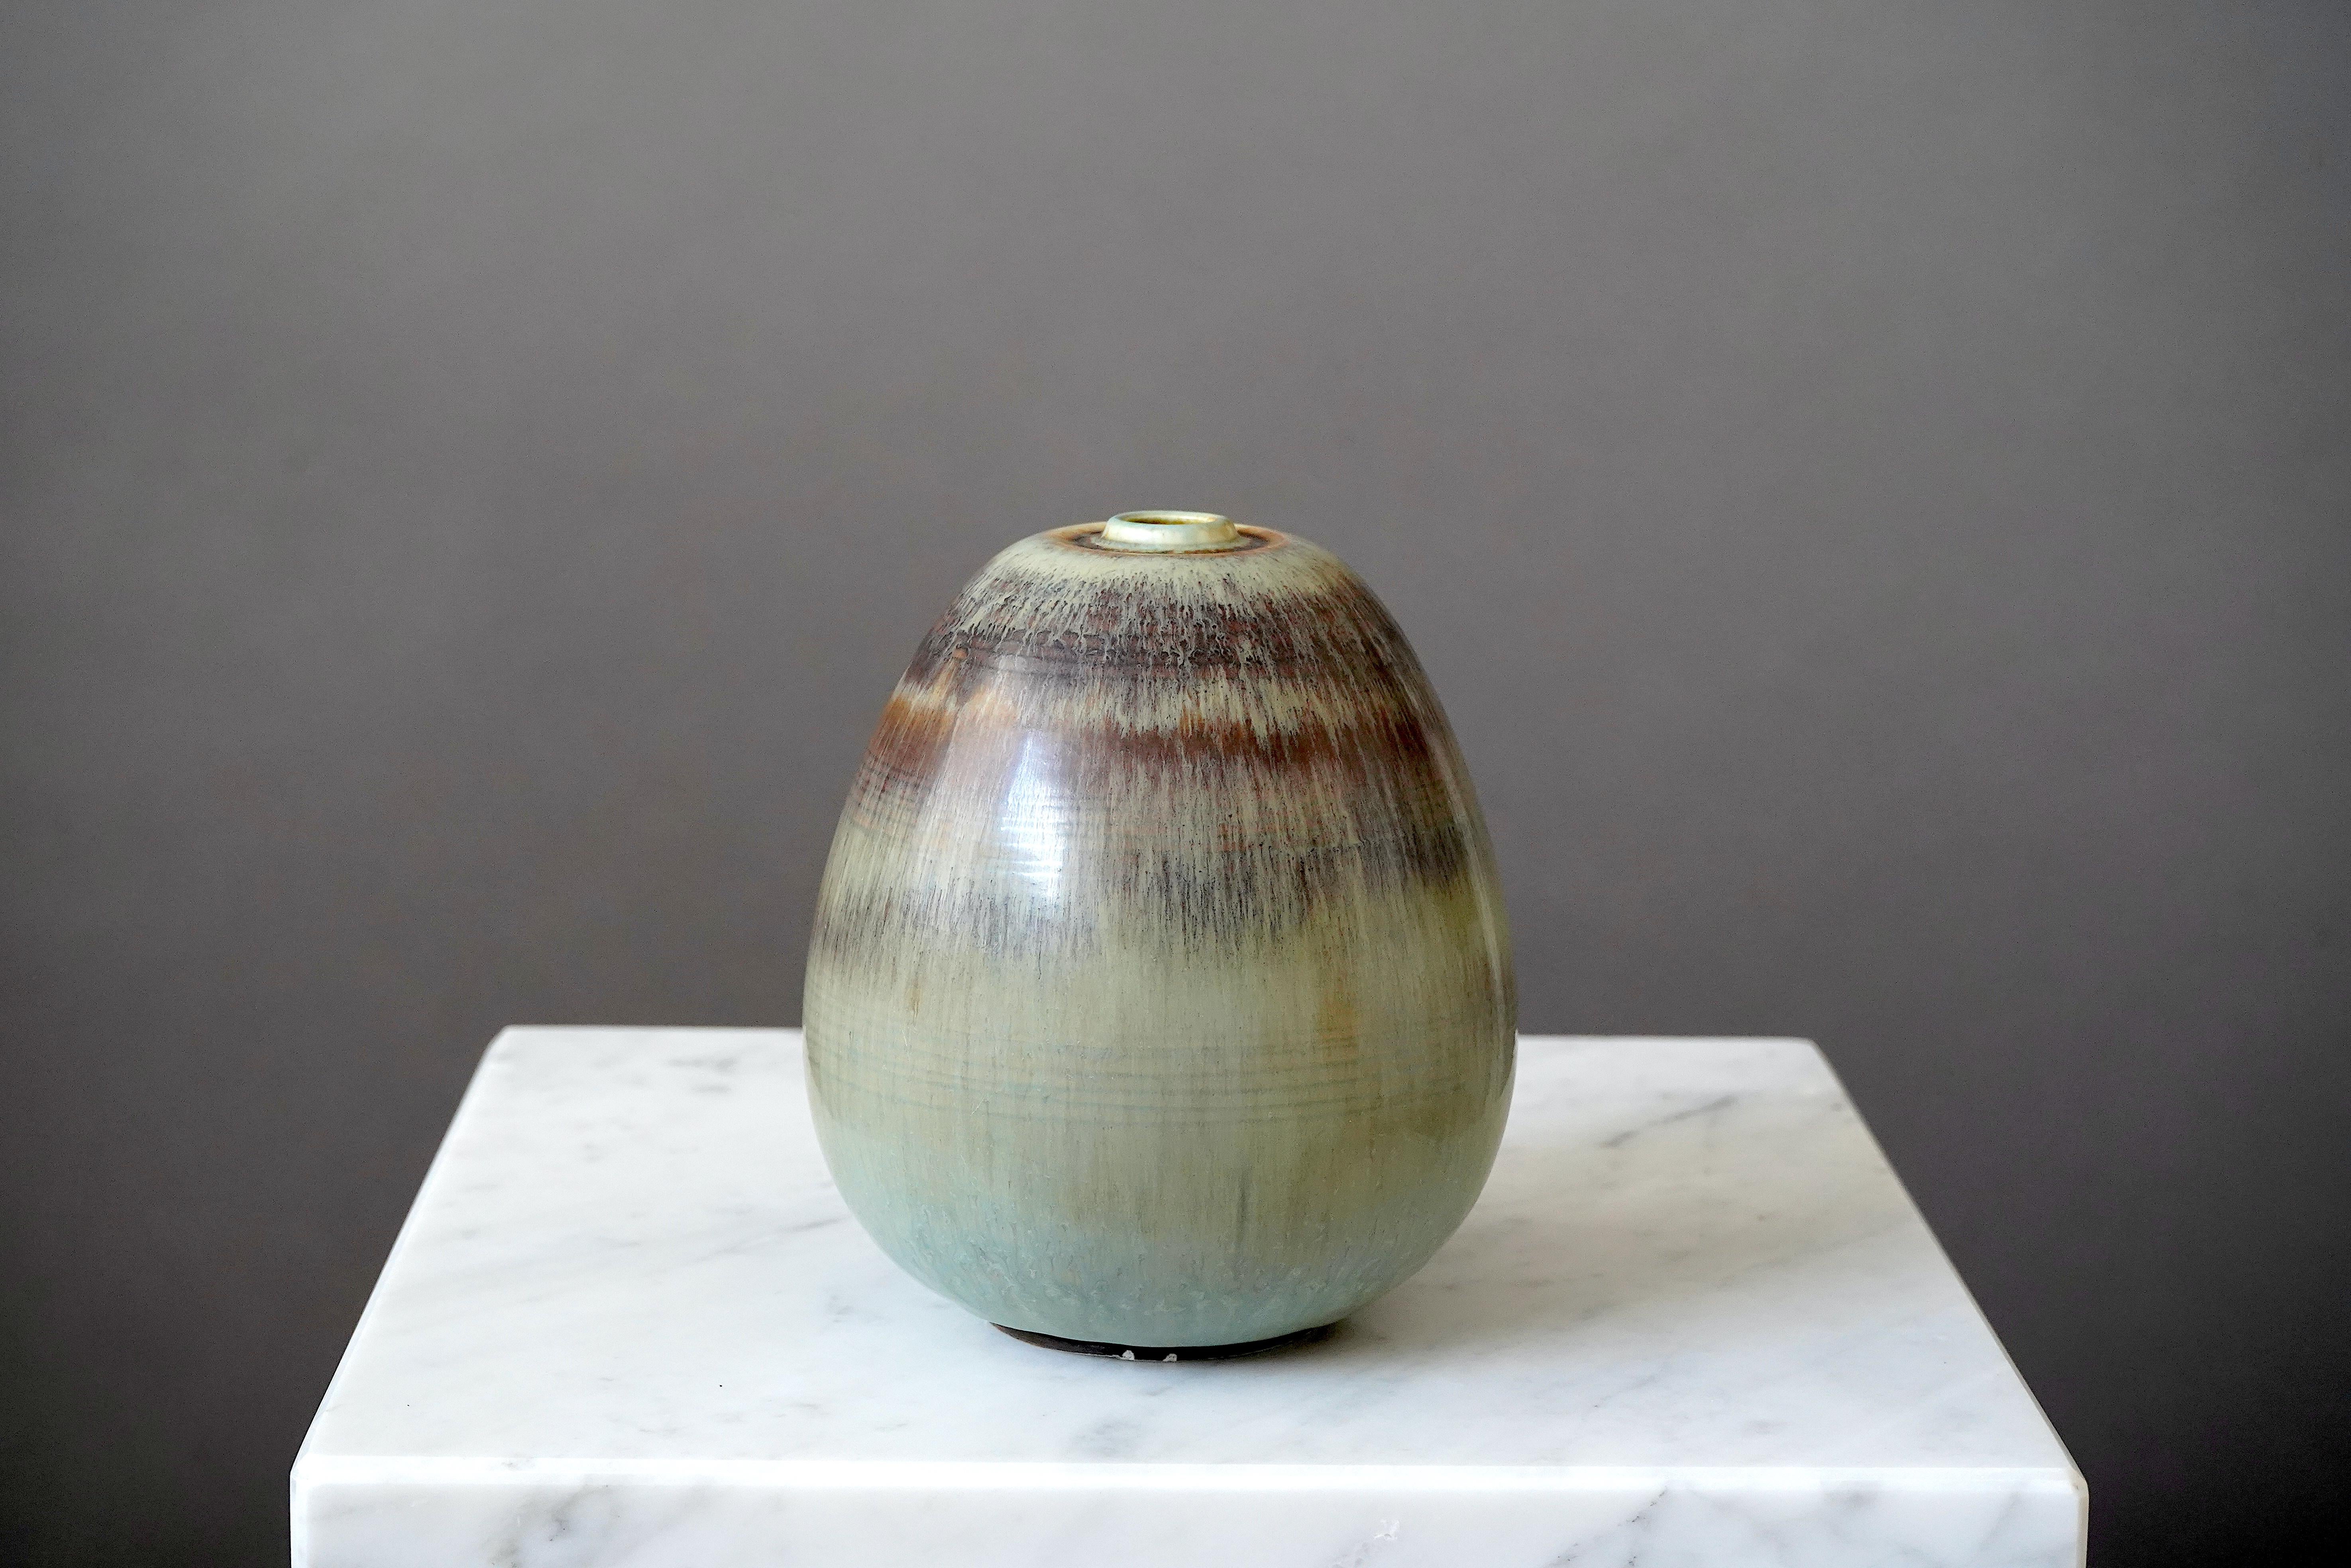 Schöne und seltene Vase aus Steingut, entworfen von Gertrud Lönegren.
Dieses Studio-Stück wurde zwischen 1936-41 in Rorstrand in Schweden geschaffen.

Exquisite Glasur. Aufgedruckt 'Rörstrand / Lönegren / SCHWEDEN / HANDDREJAD'.

Guter Zustand, aber